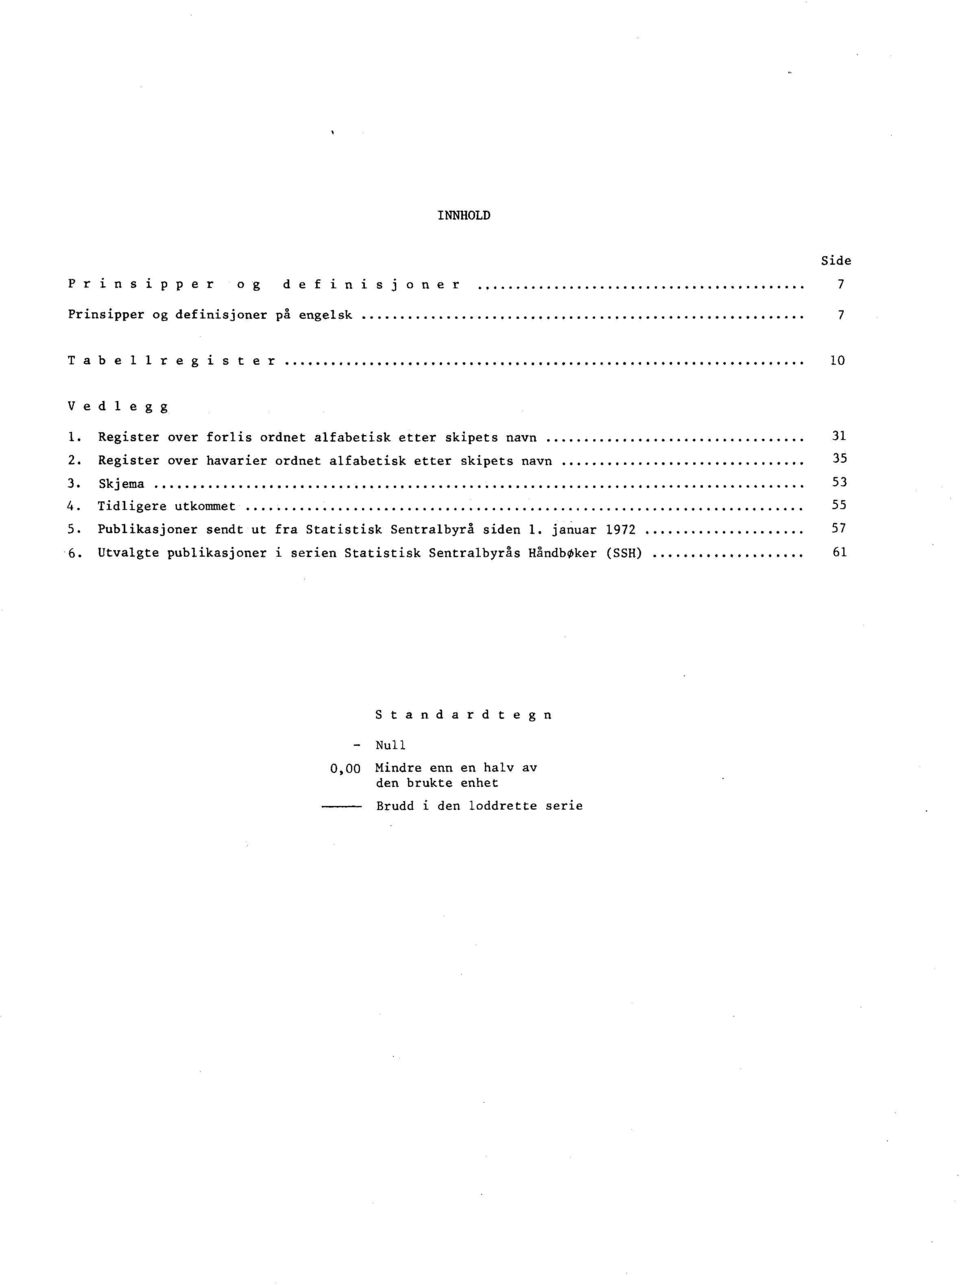 Skjema 53 4. Tidligere utkommet 55 5. Publikasjoner sendt ut fra Statistisk Sentralbyrå siden 1. januar 1972 57 6.